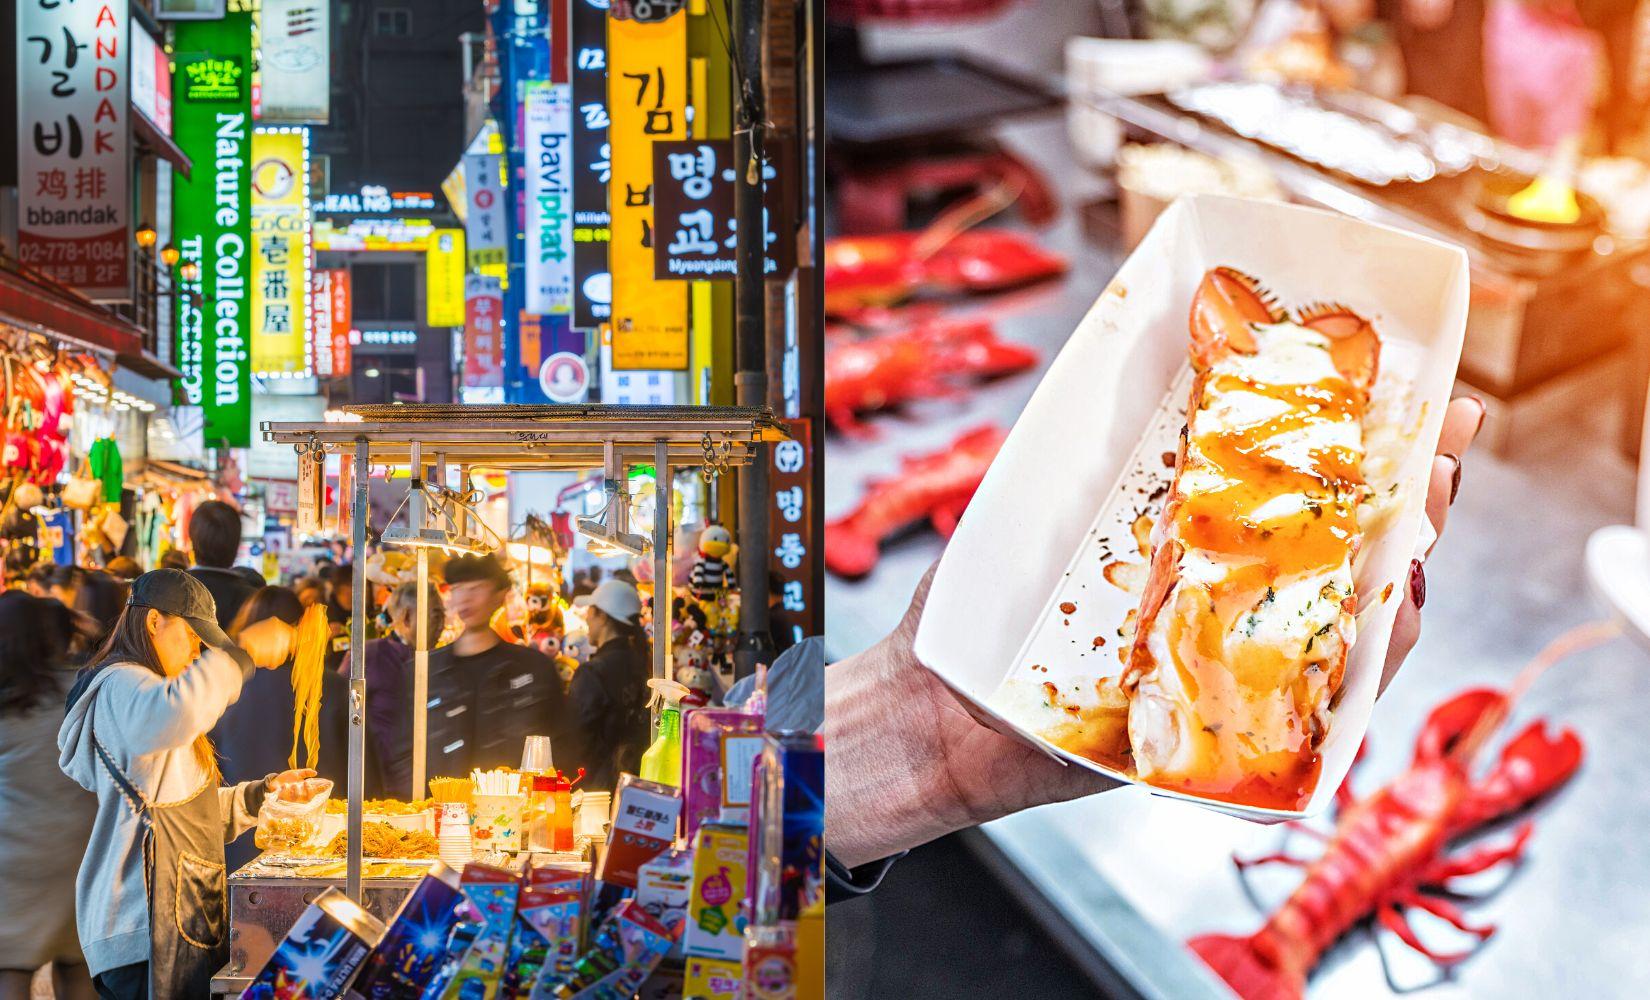 Danh sách món ăn đường phố nhất định nên thử tại Myeongdong, Hàn Quốc